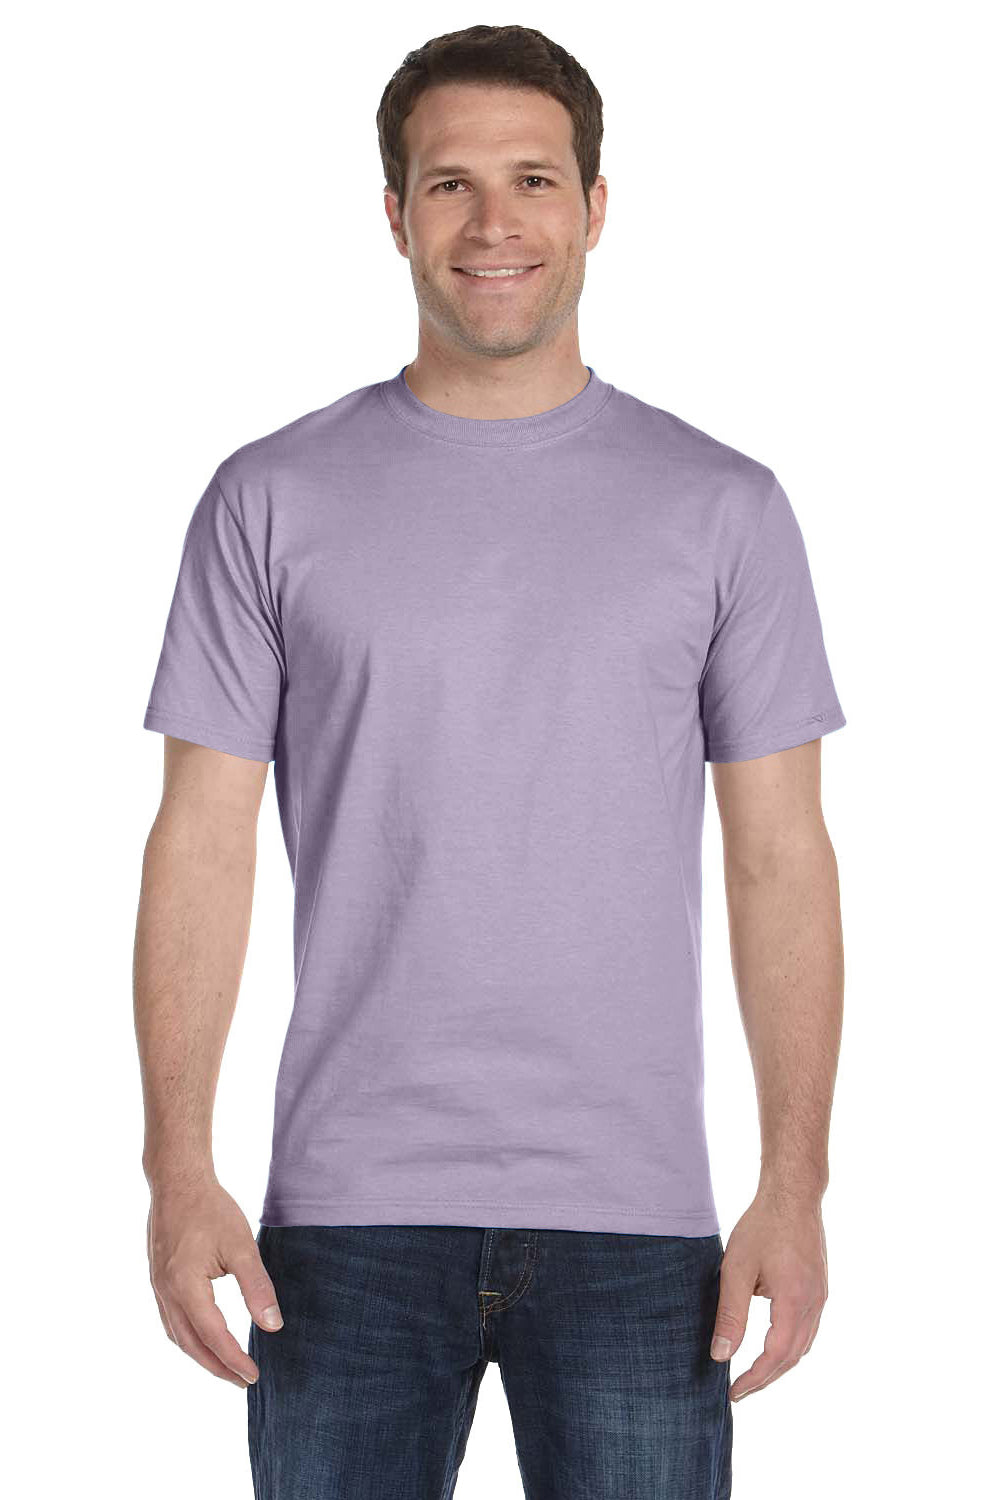 Hanes Men's ComfortSoft 100% Cotton T-Shirt 5280